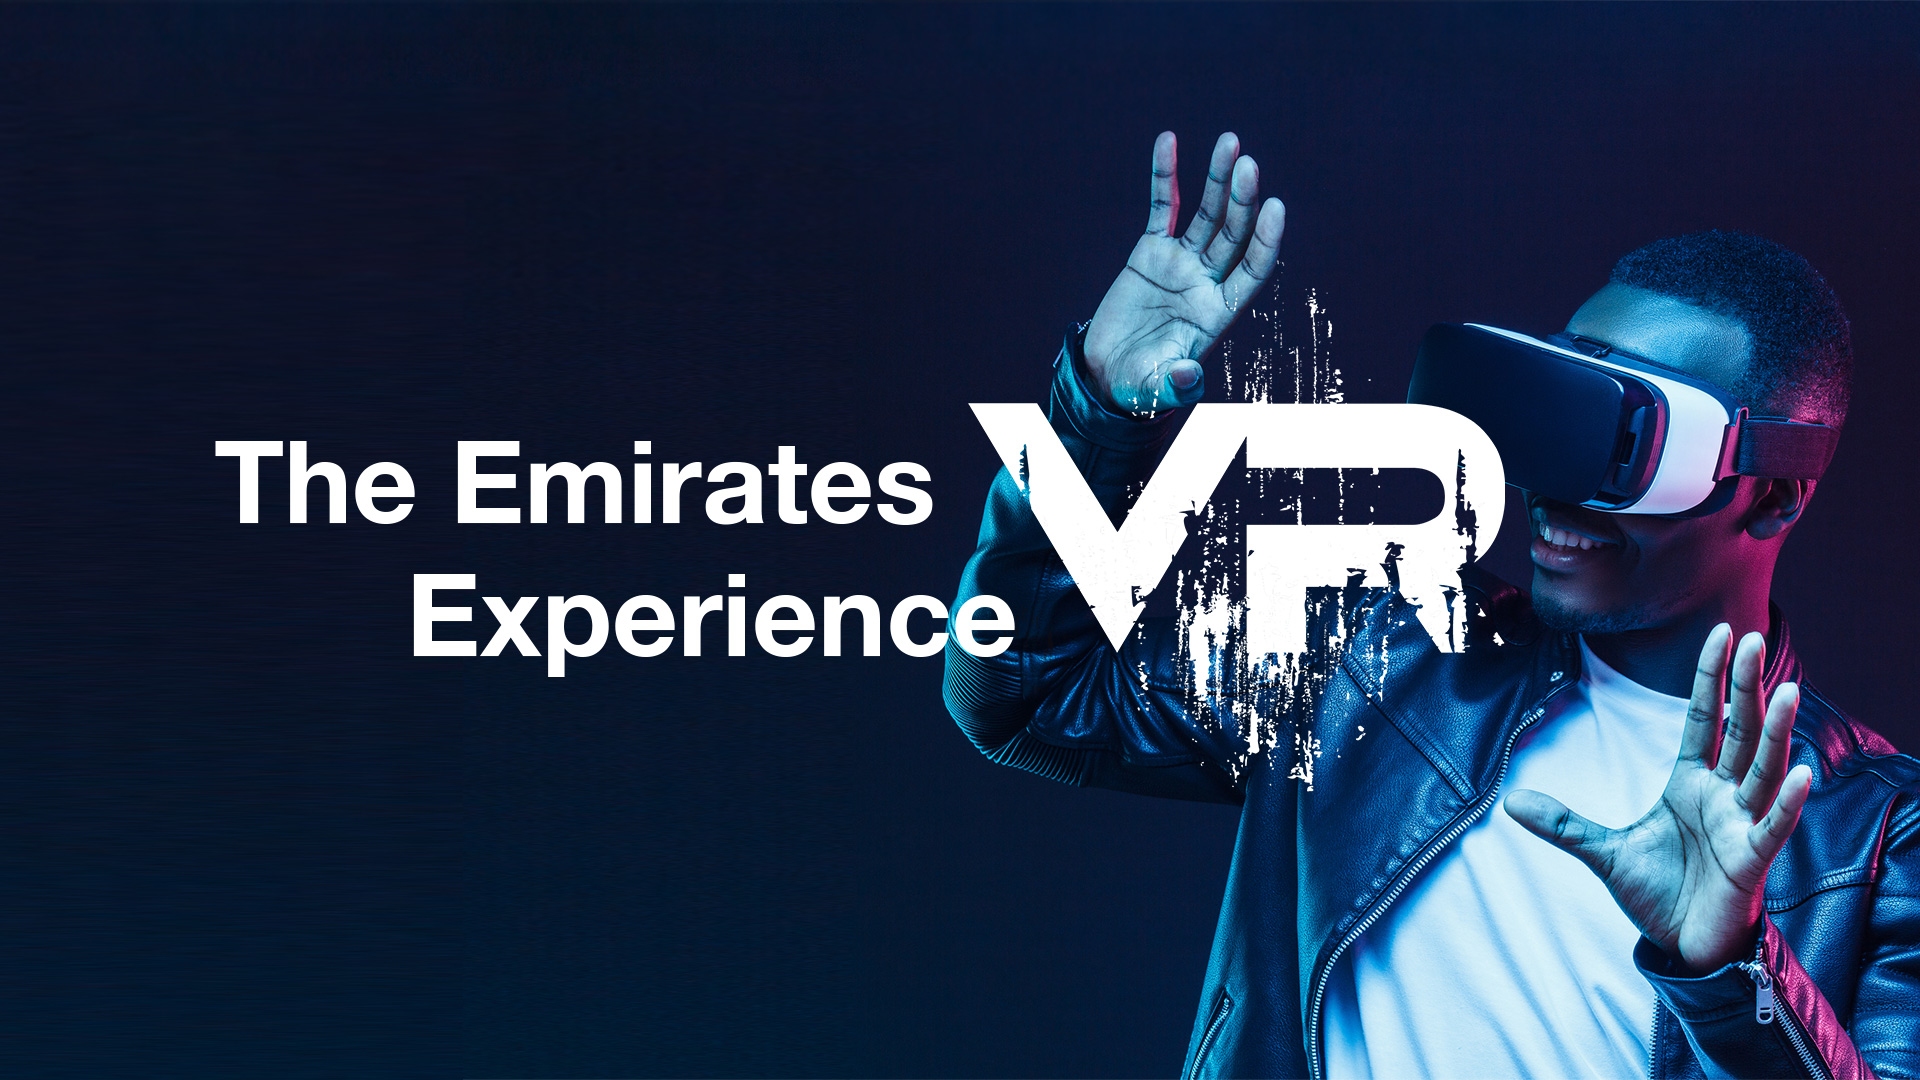 图片展示一位男士戴着虚拟现实头盔，似乎正在体验VR游戏，背景有“Emirates VR Experience”字样，色彩鲜明，科技感强烈。